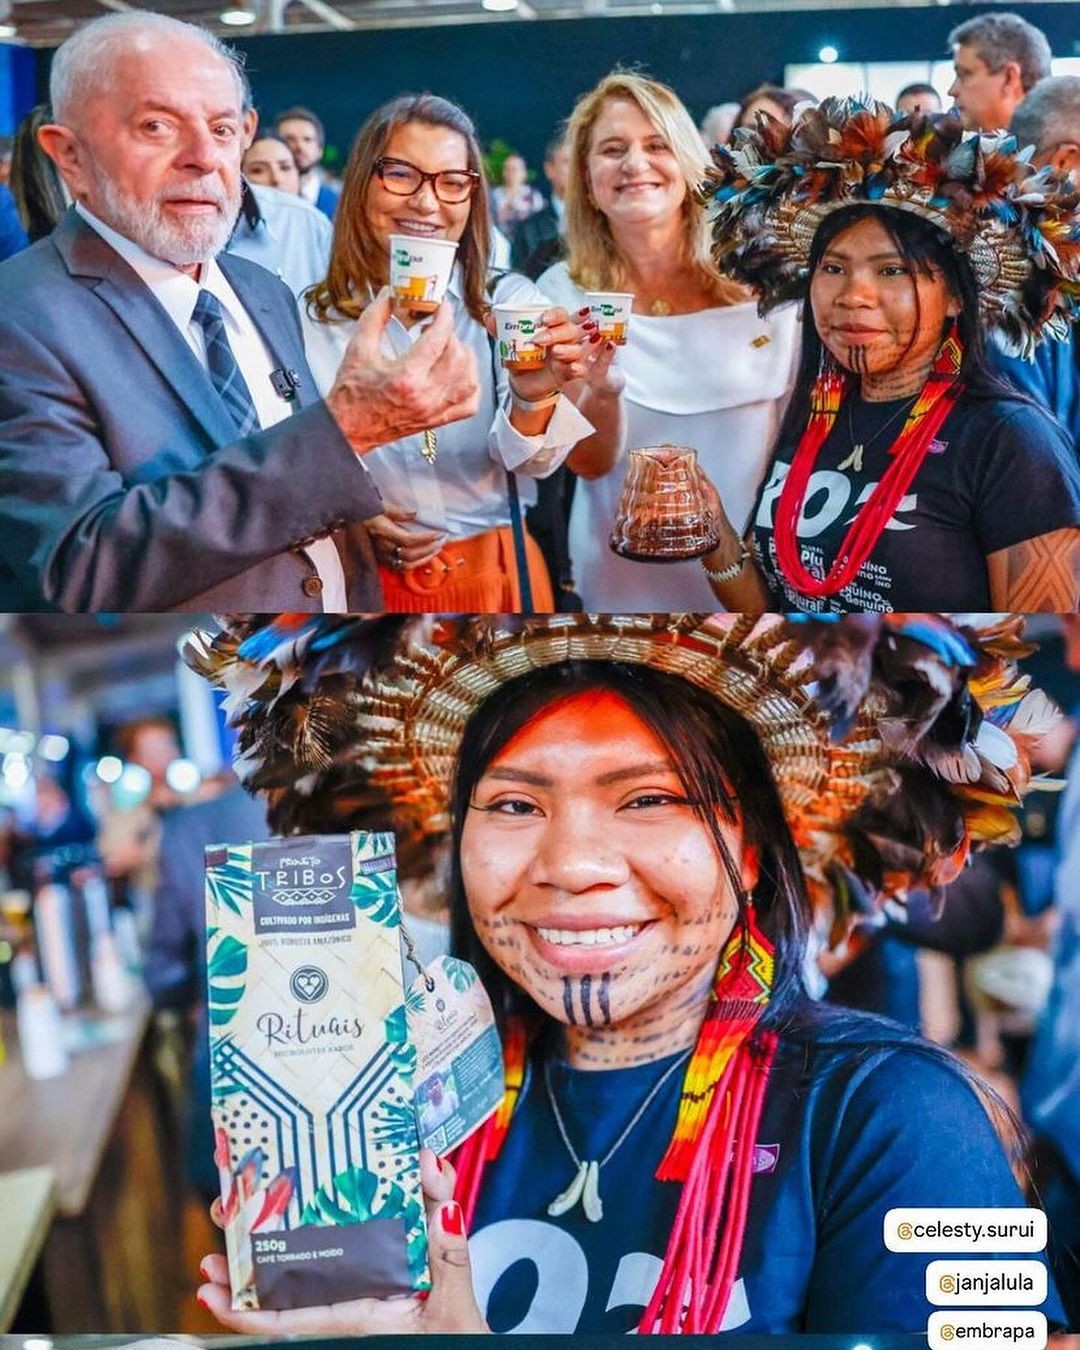 conheca-cafe-especial-provado-pelo-presidente-lula-e-produzido-dentro-de-terra-indigena-em-ro